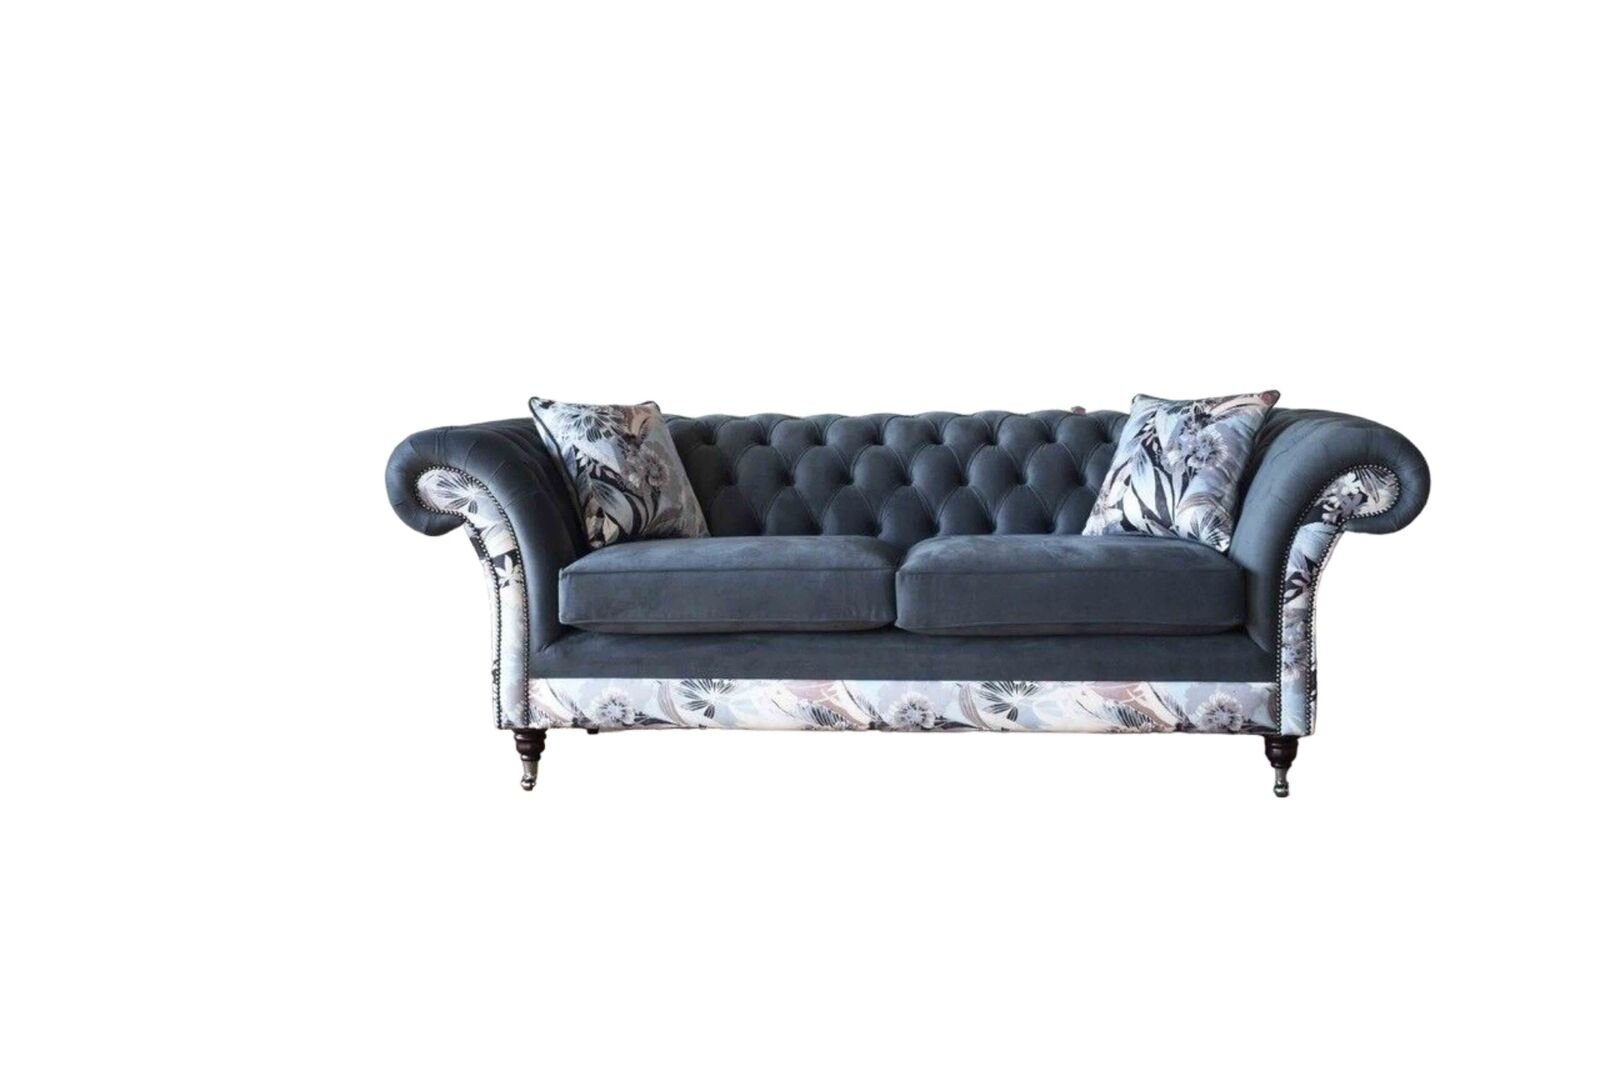 JVmoebel Sofa Blauer Dreisitzer Design Polster Sitz Textil Sofa 3 Sitzer Luxus Couch, Made in Europe